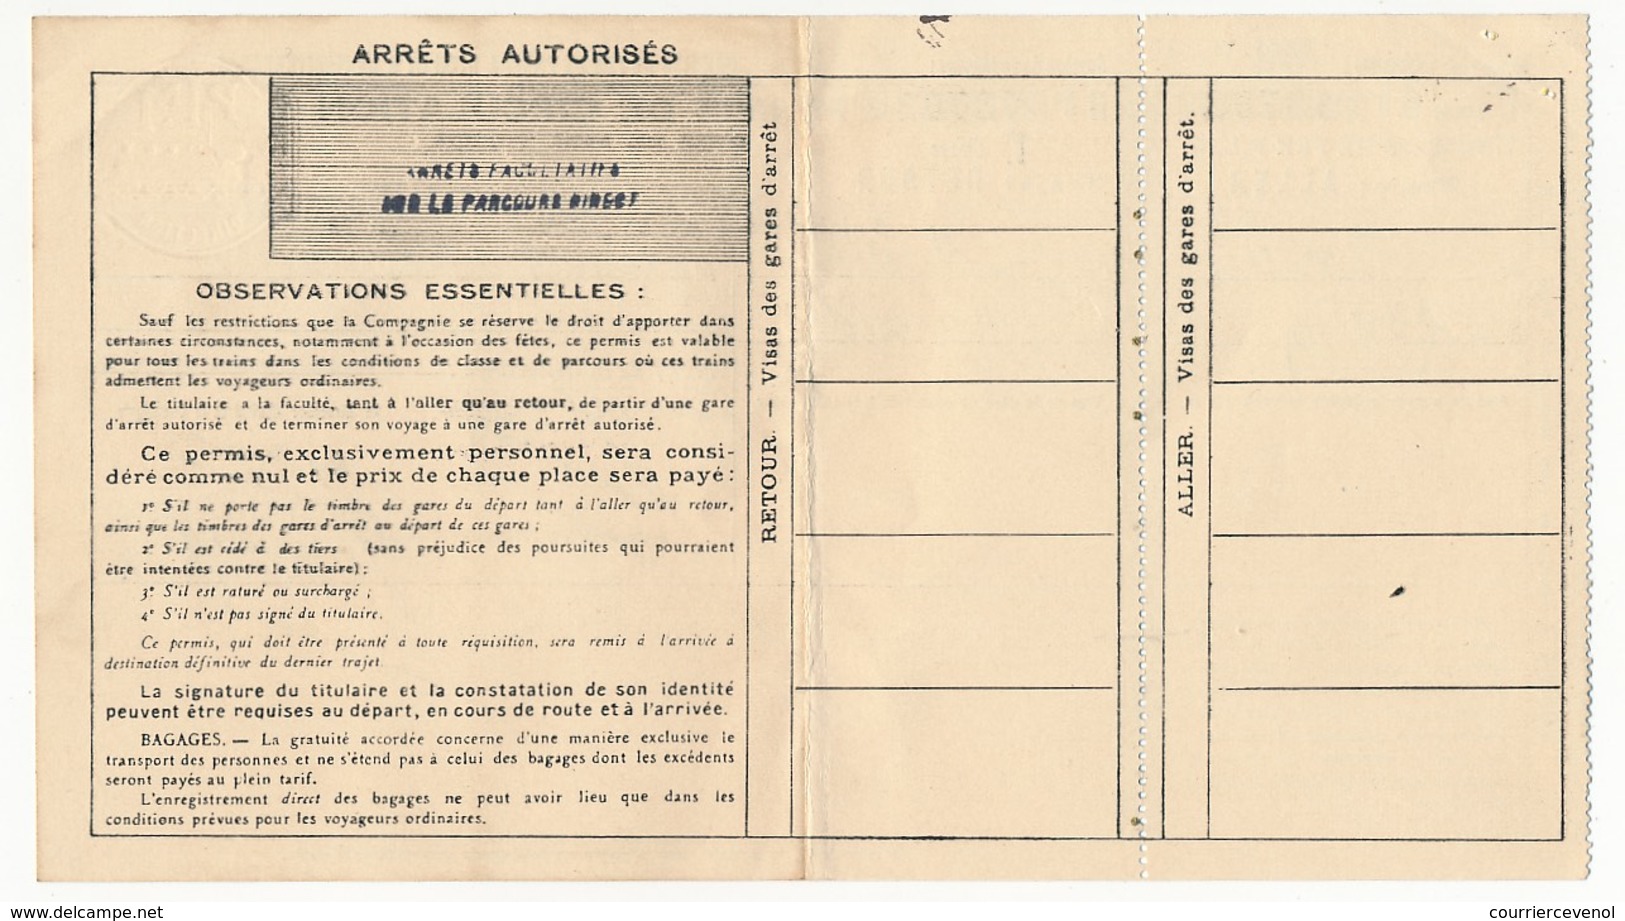 FRANCE - Chemins De Fer P.L.M. - Permis De Circulation Pour Un Seul Voyage 1936/37 - 1ere Classe - Europa